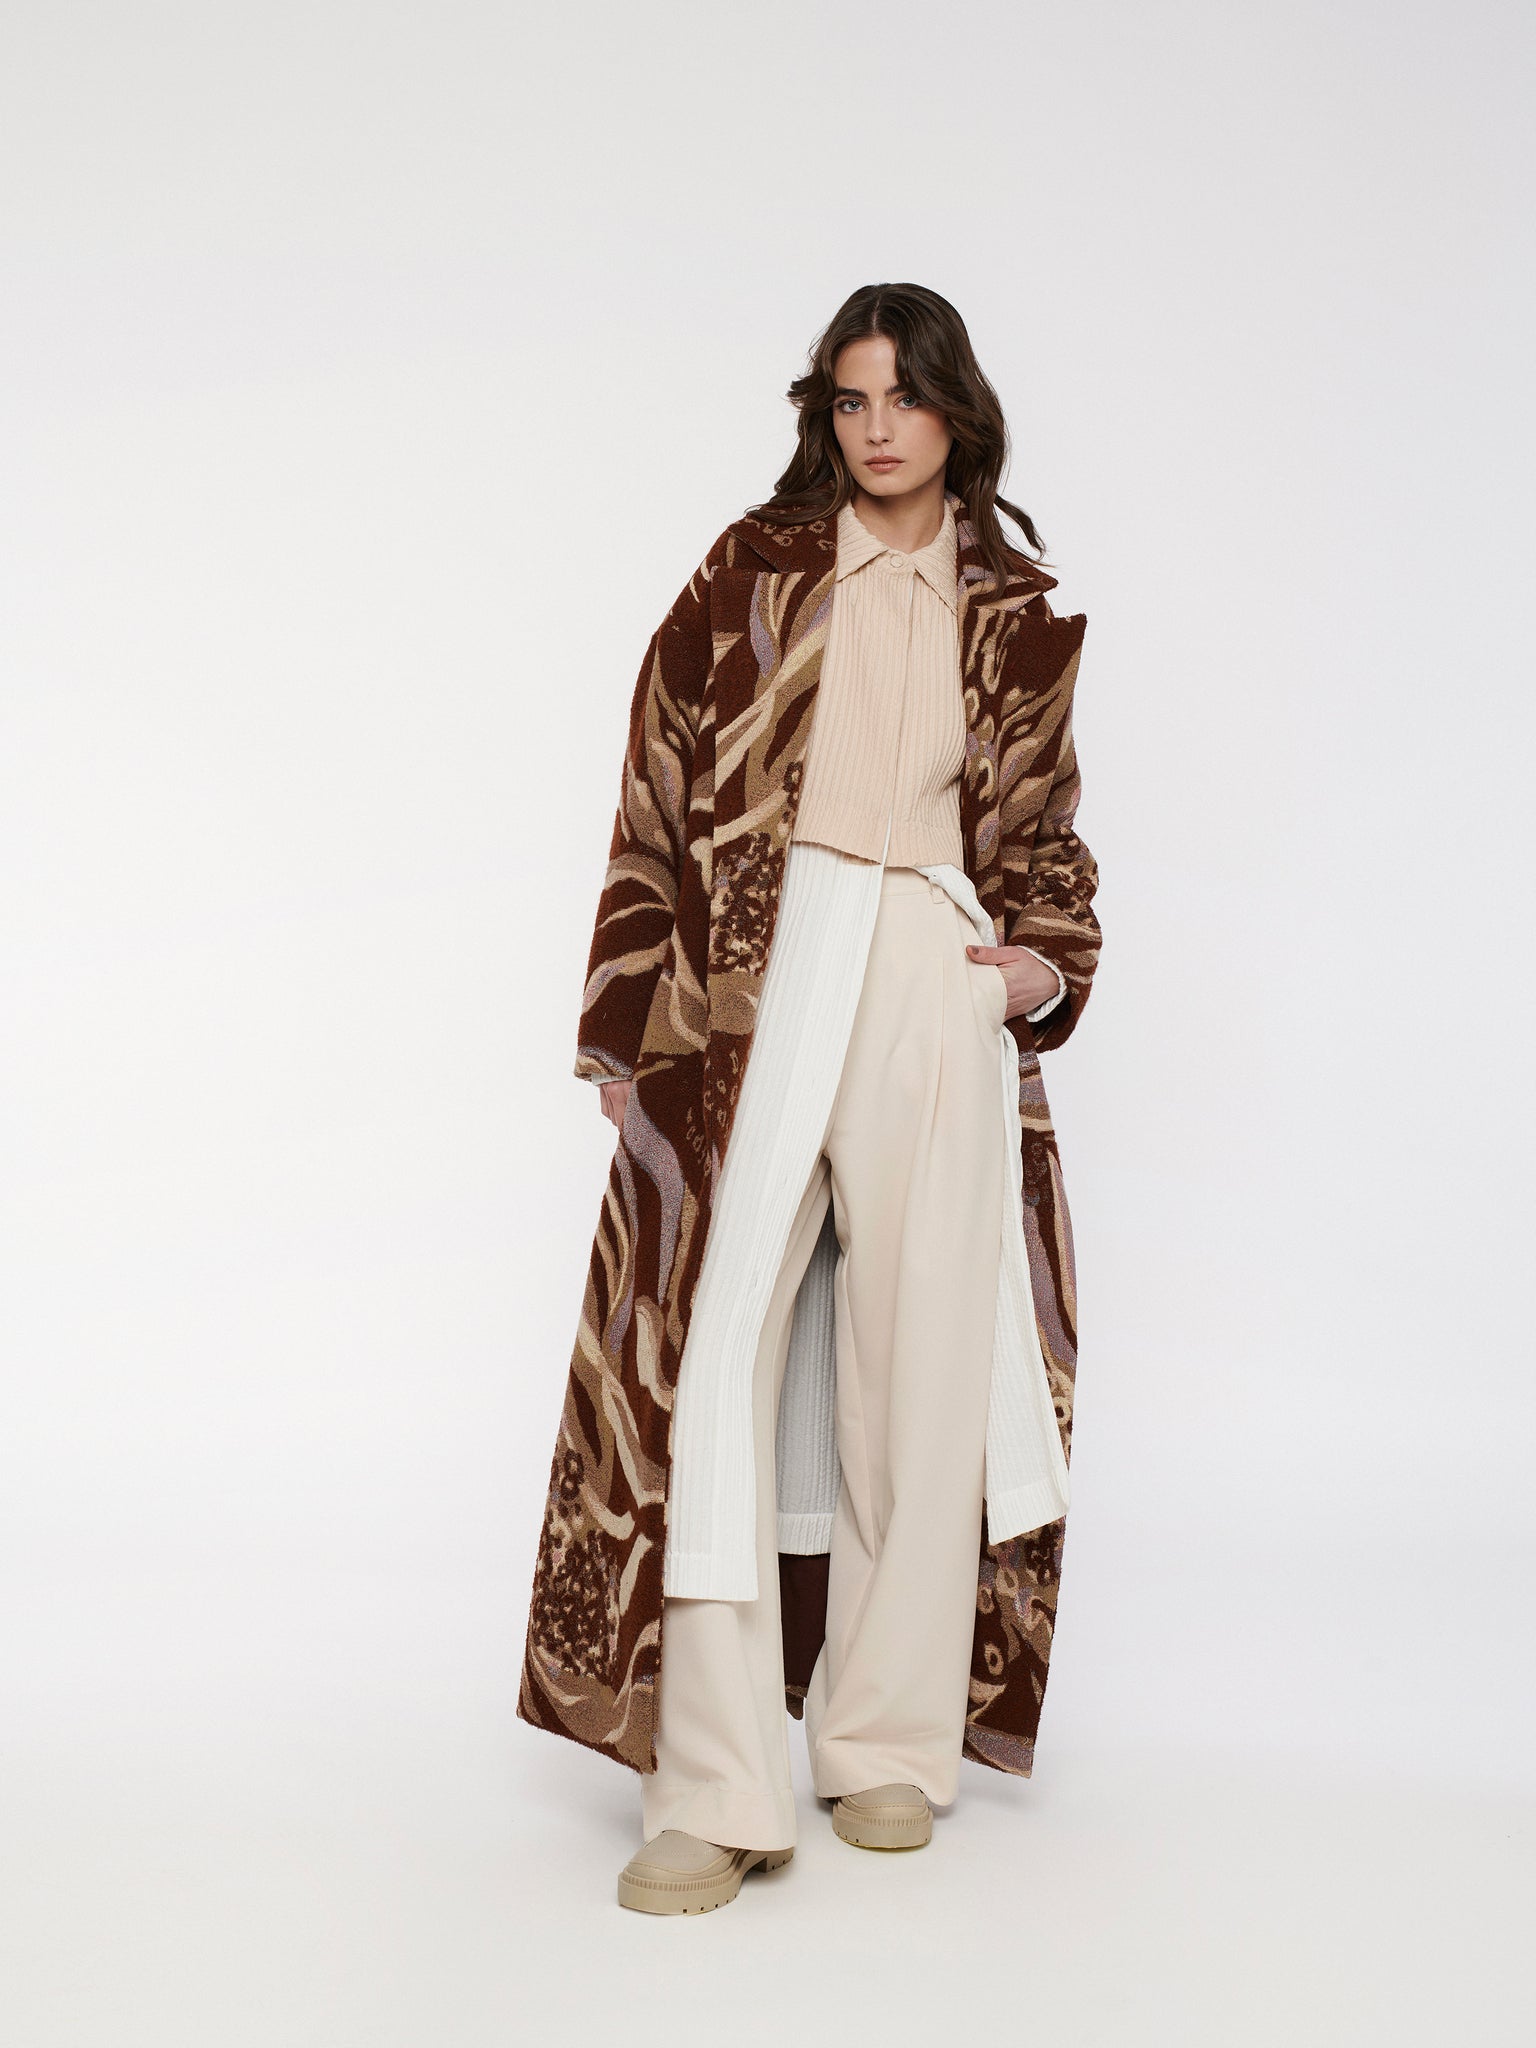 HERITAGE robecoat -rust